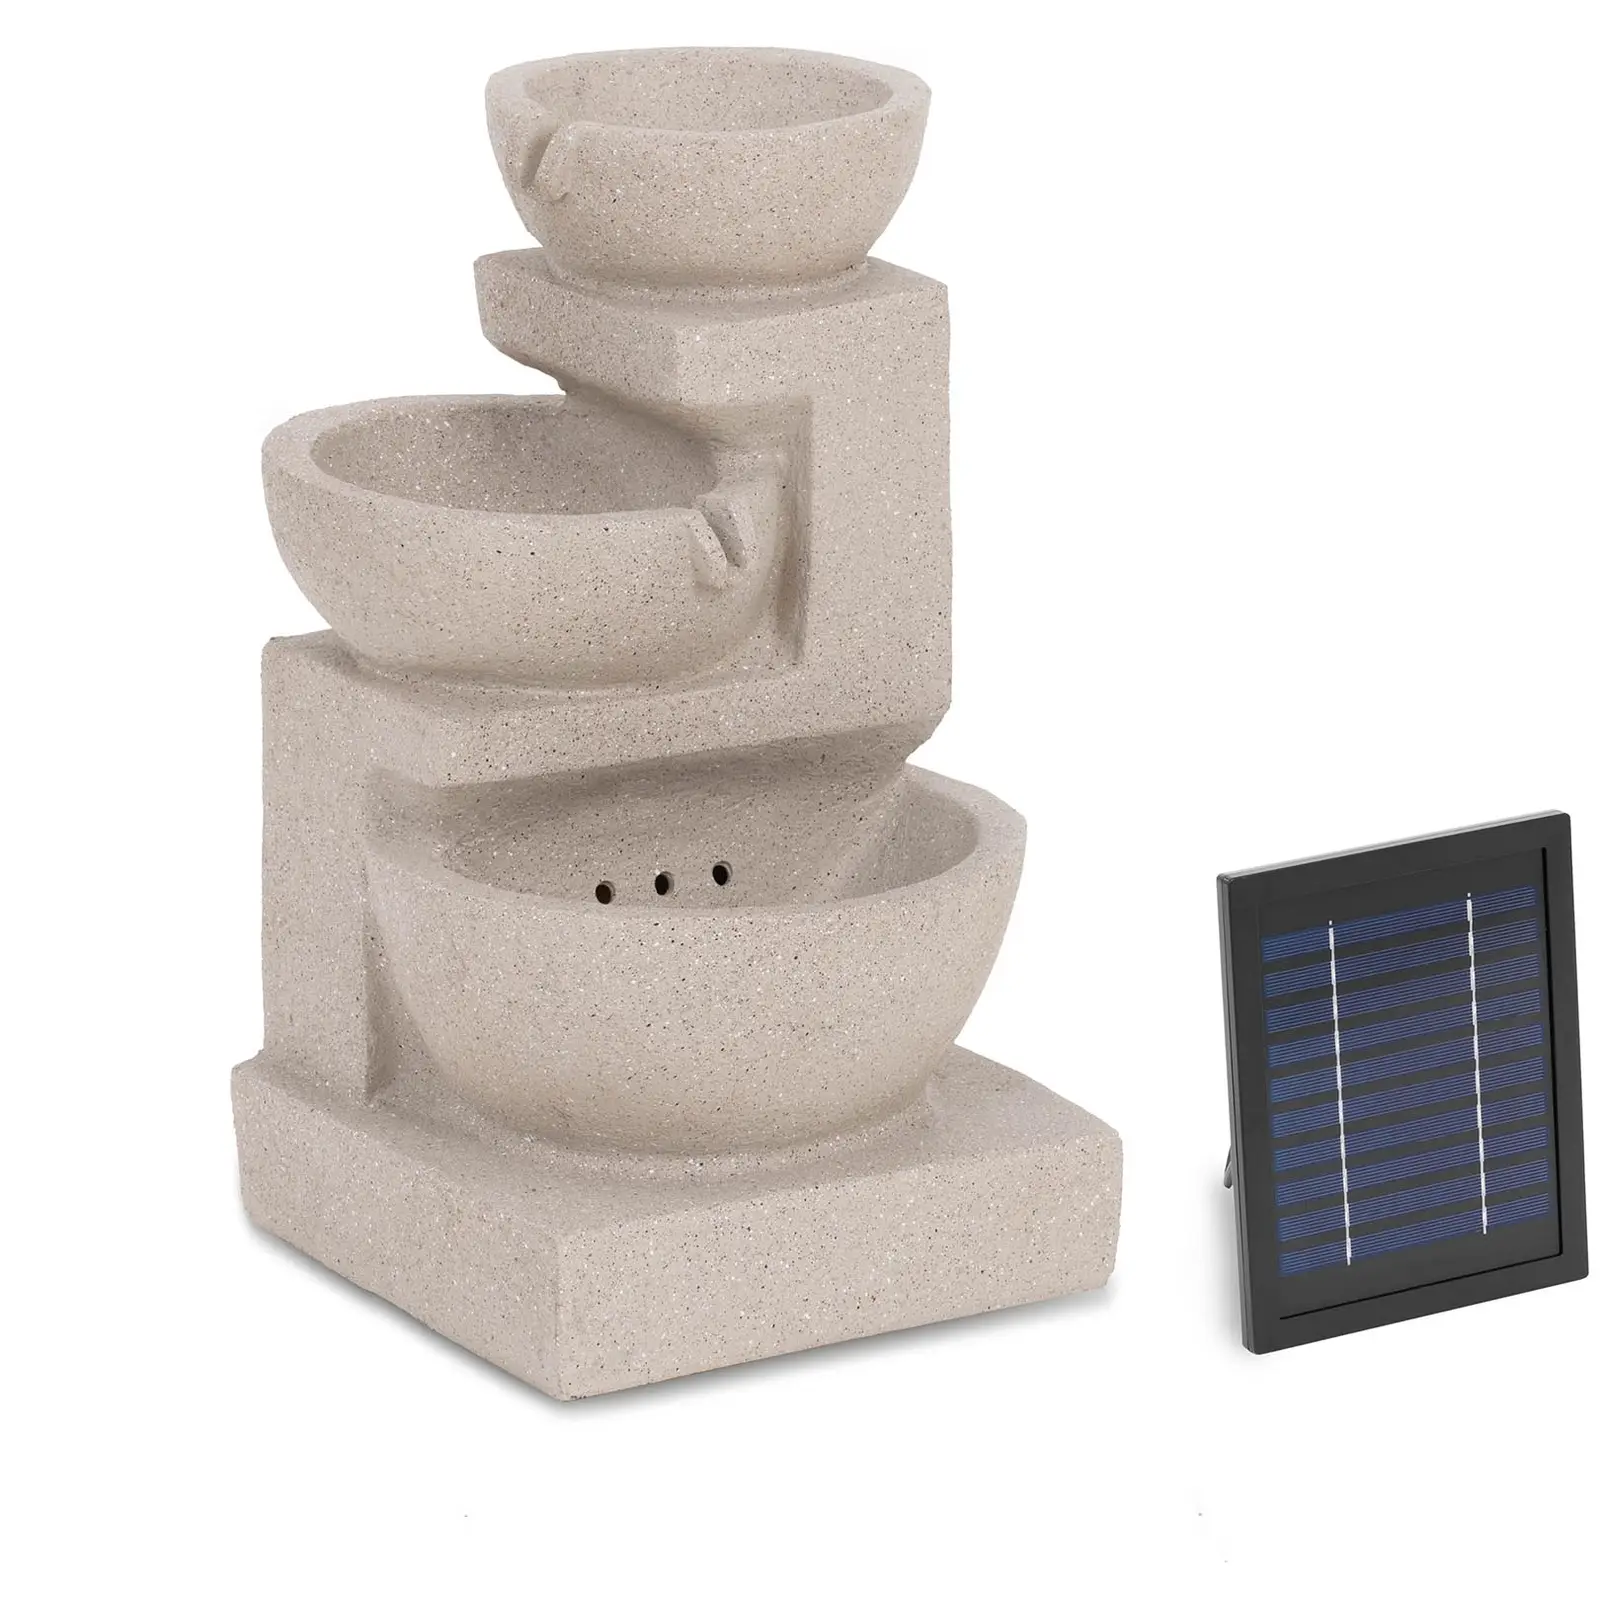 Solární zahradní fontána - 3 mísy na hliněné stěně - LED osvětlení